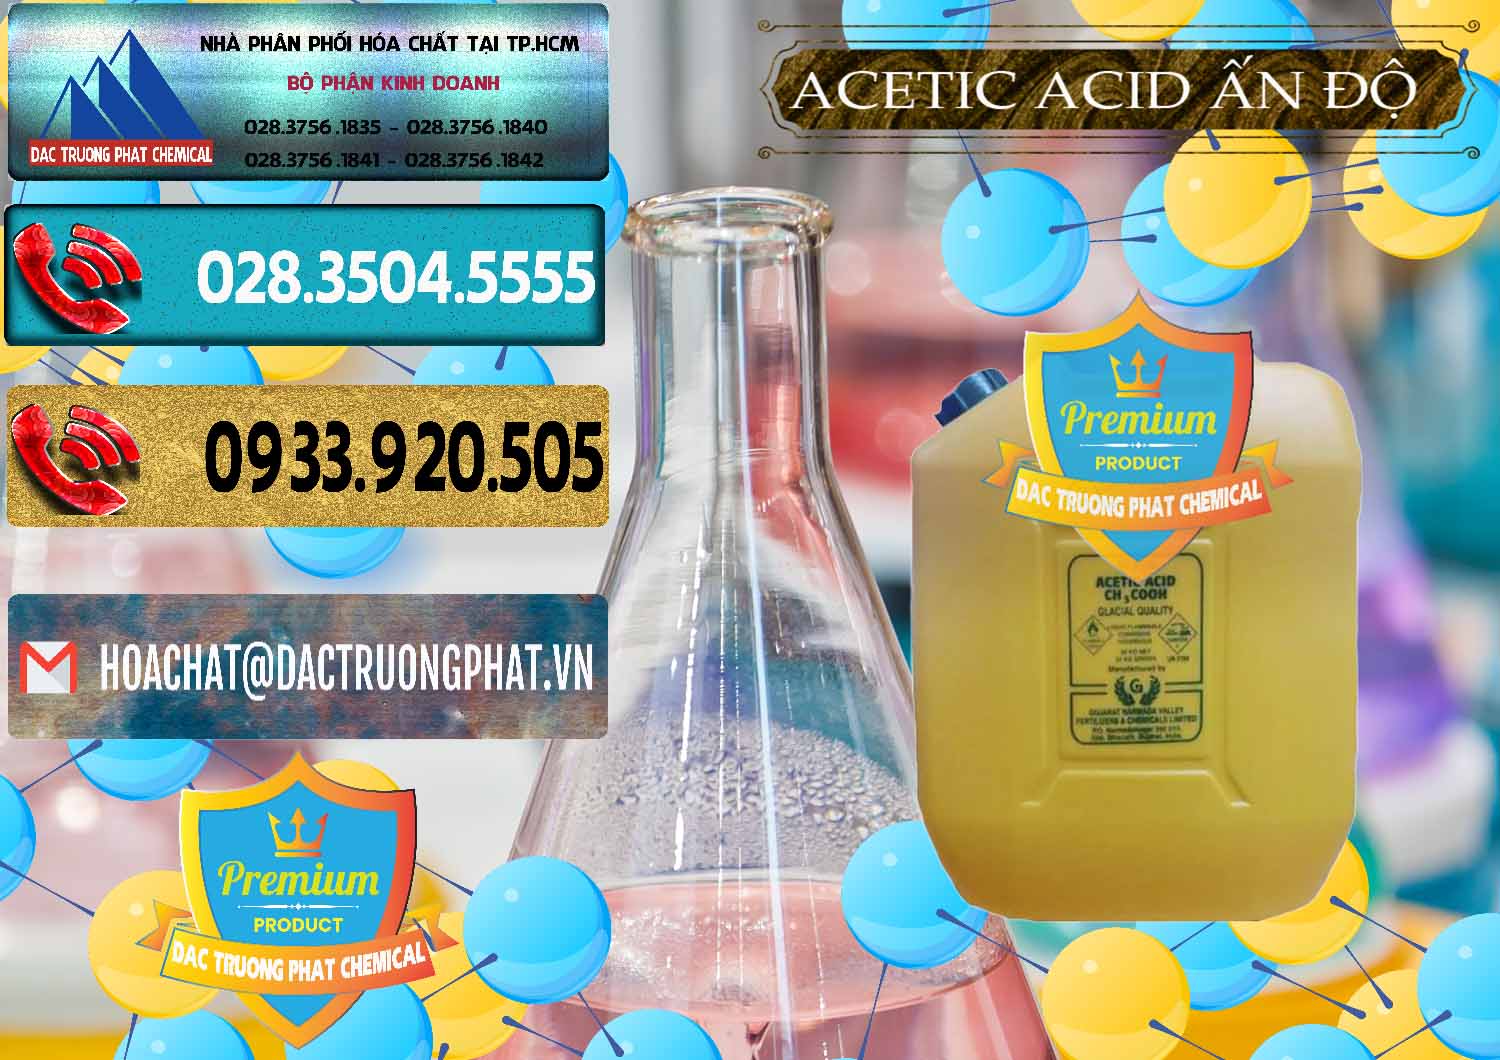 Công ty chuyên bán ( cung ứng ) Acetic Acid – Axit Acetic Ấn Độ India - 0359 - Đơn vị chuyên nhập khẩu & phân phối hóa chất tại TP.HCM - hoachatdetnhuom.com